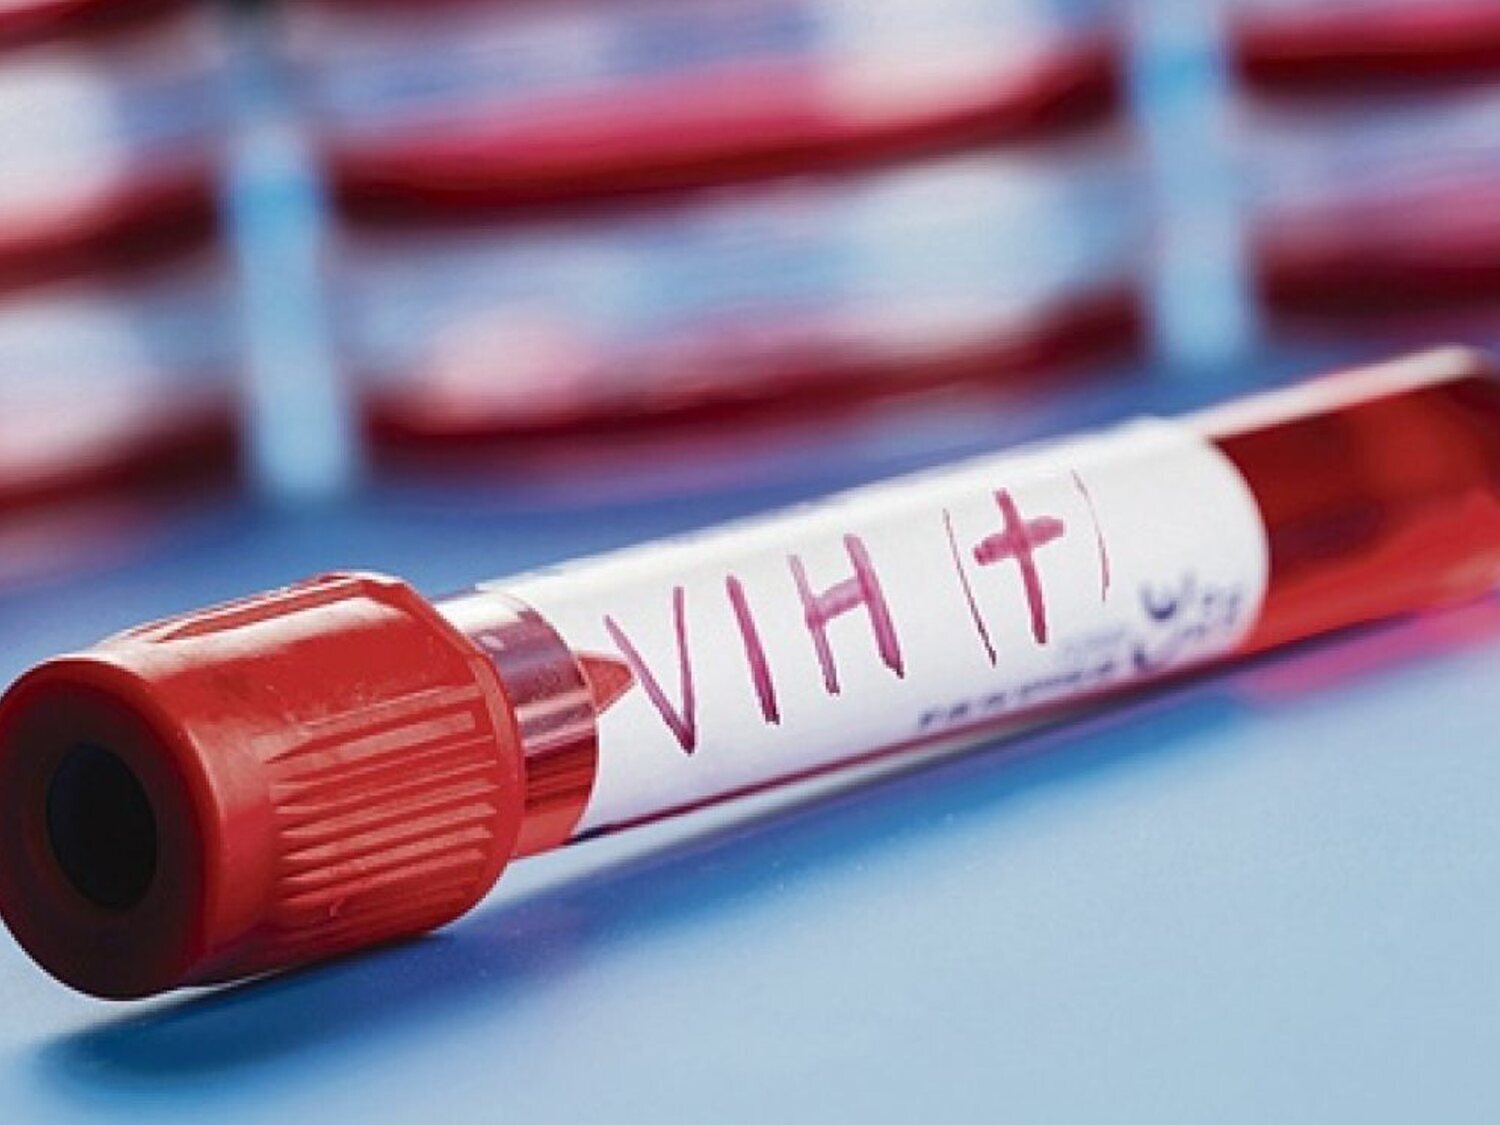 Descubren una variante del VIH más virulenta y transmisible